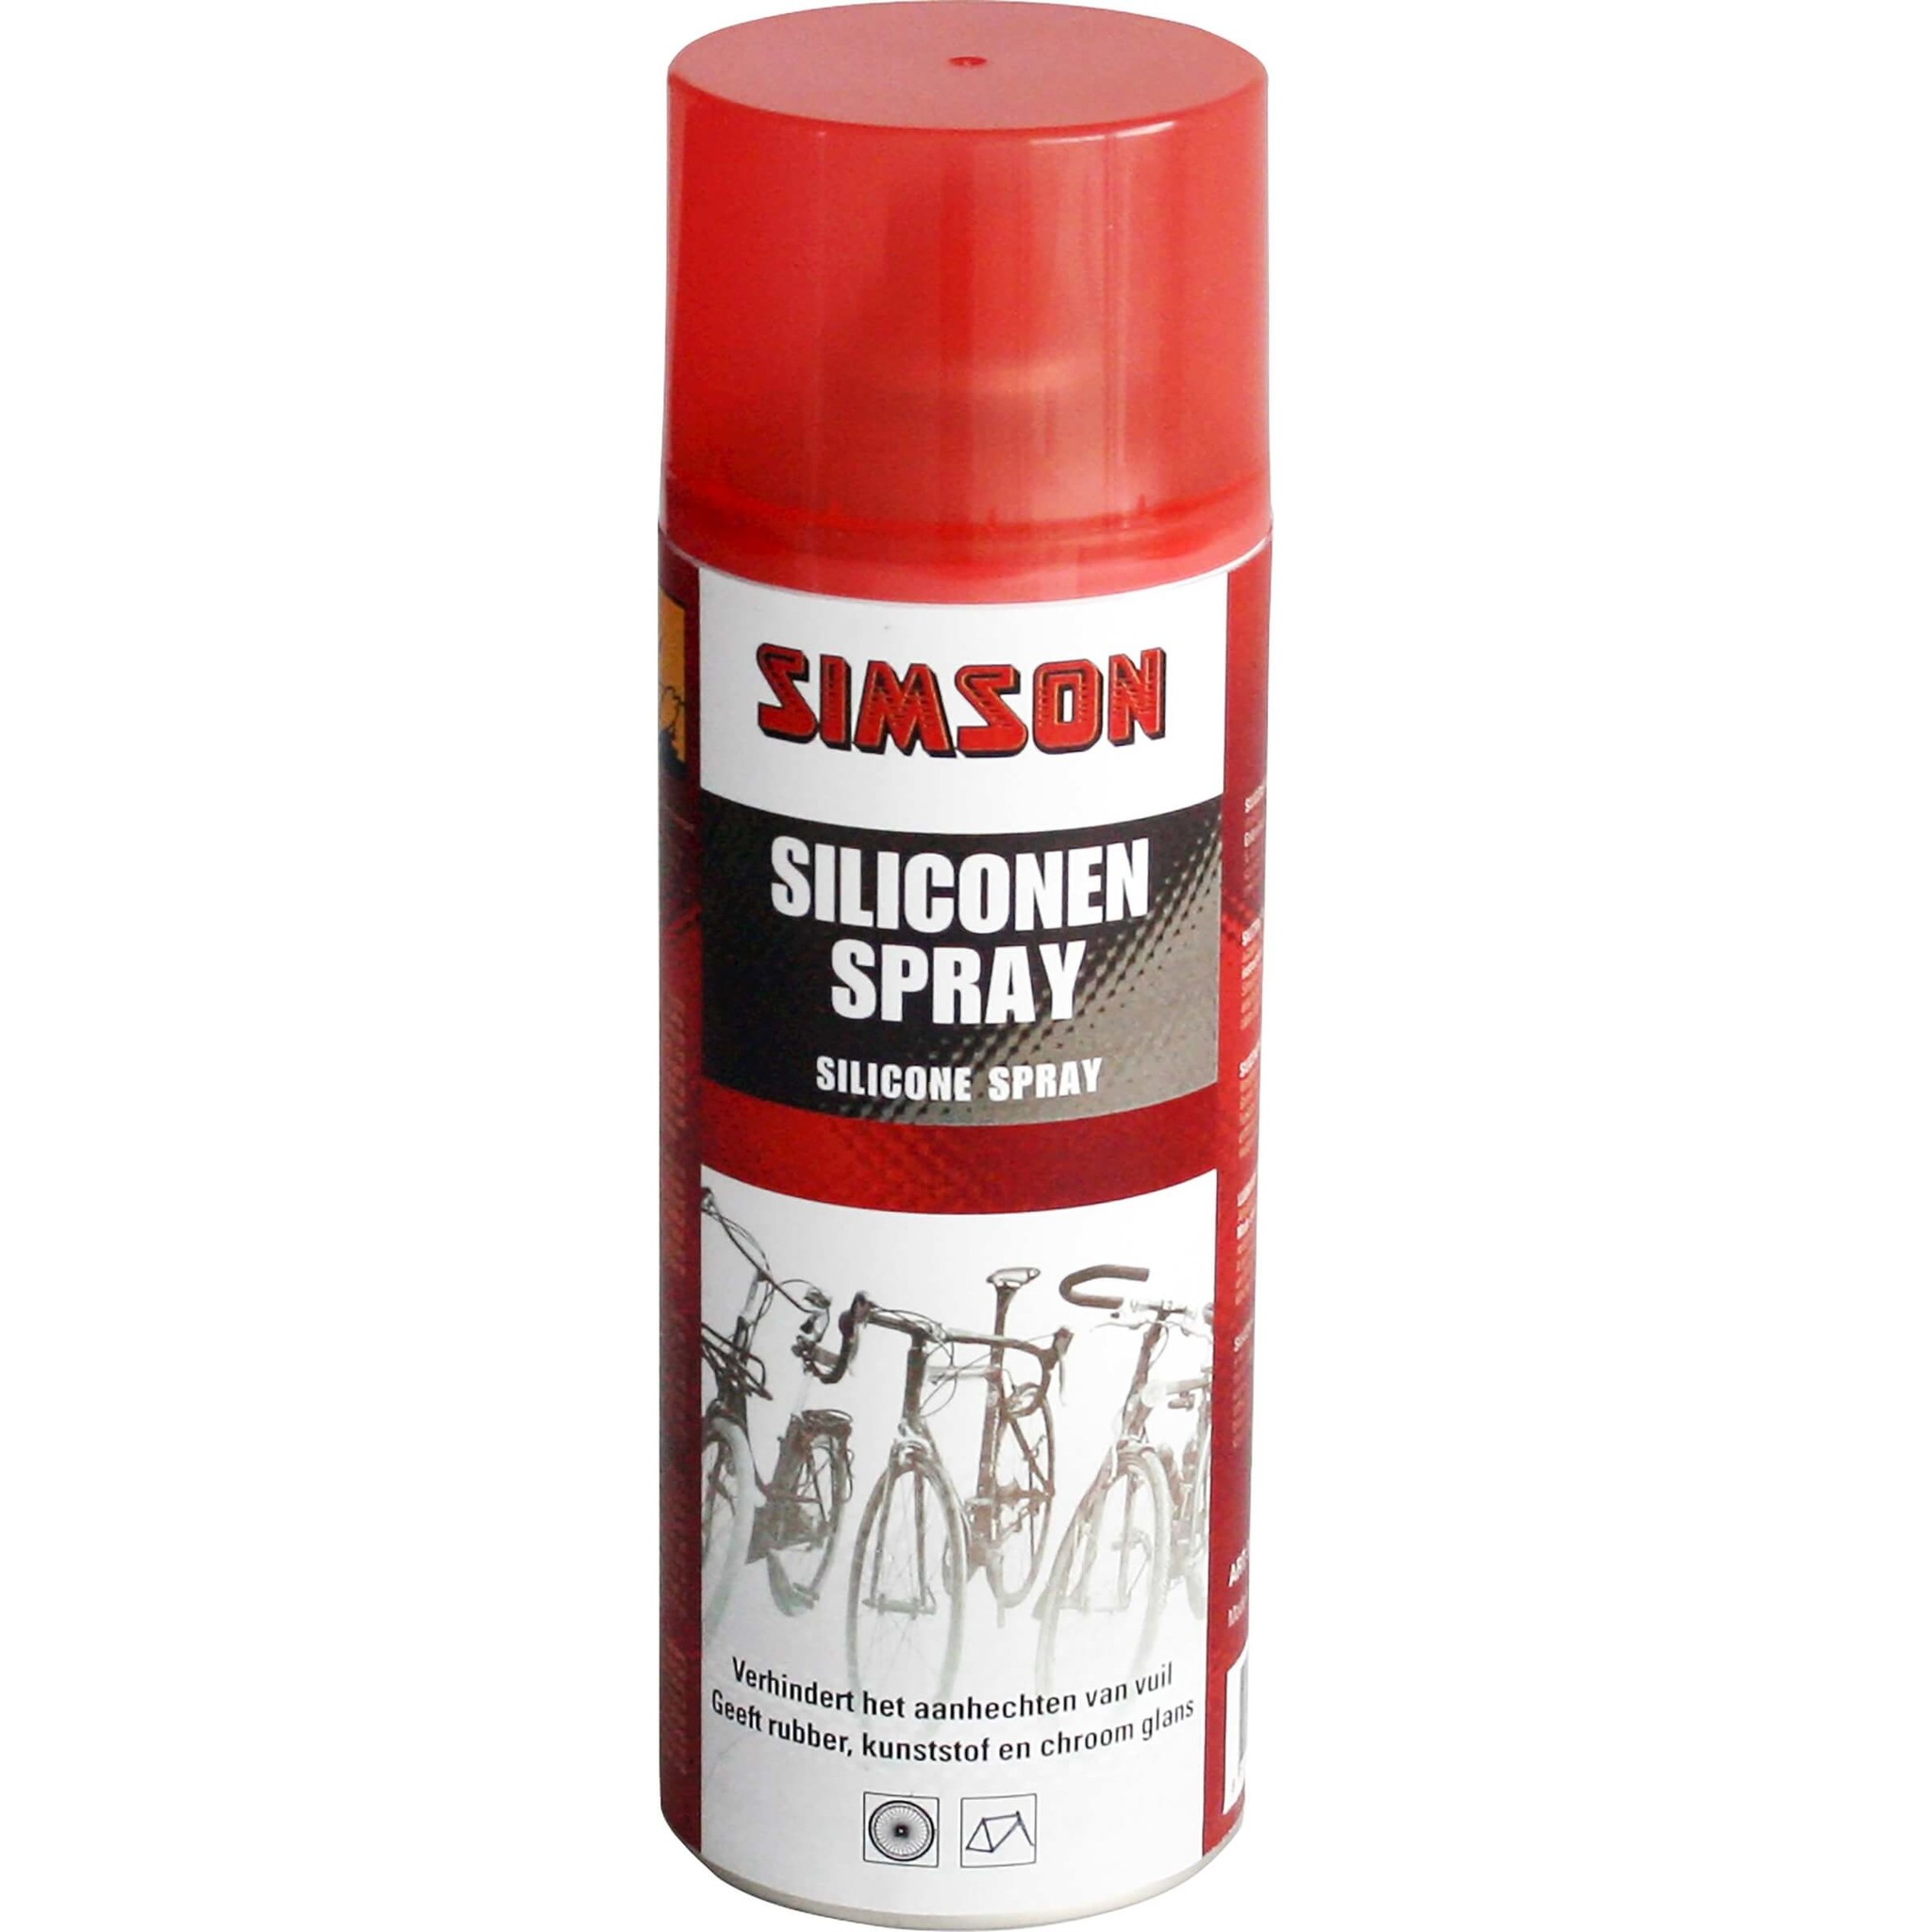 Simson siliconen spray